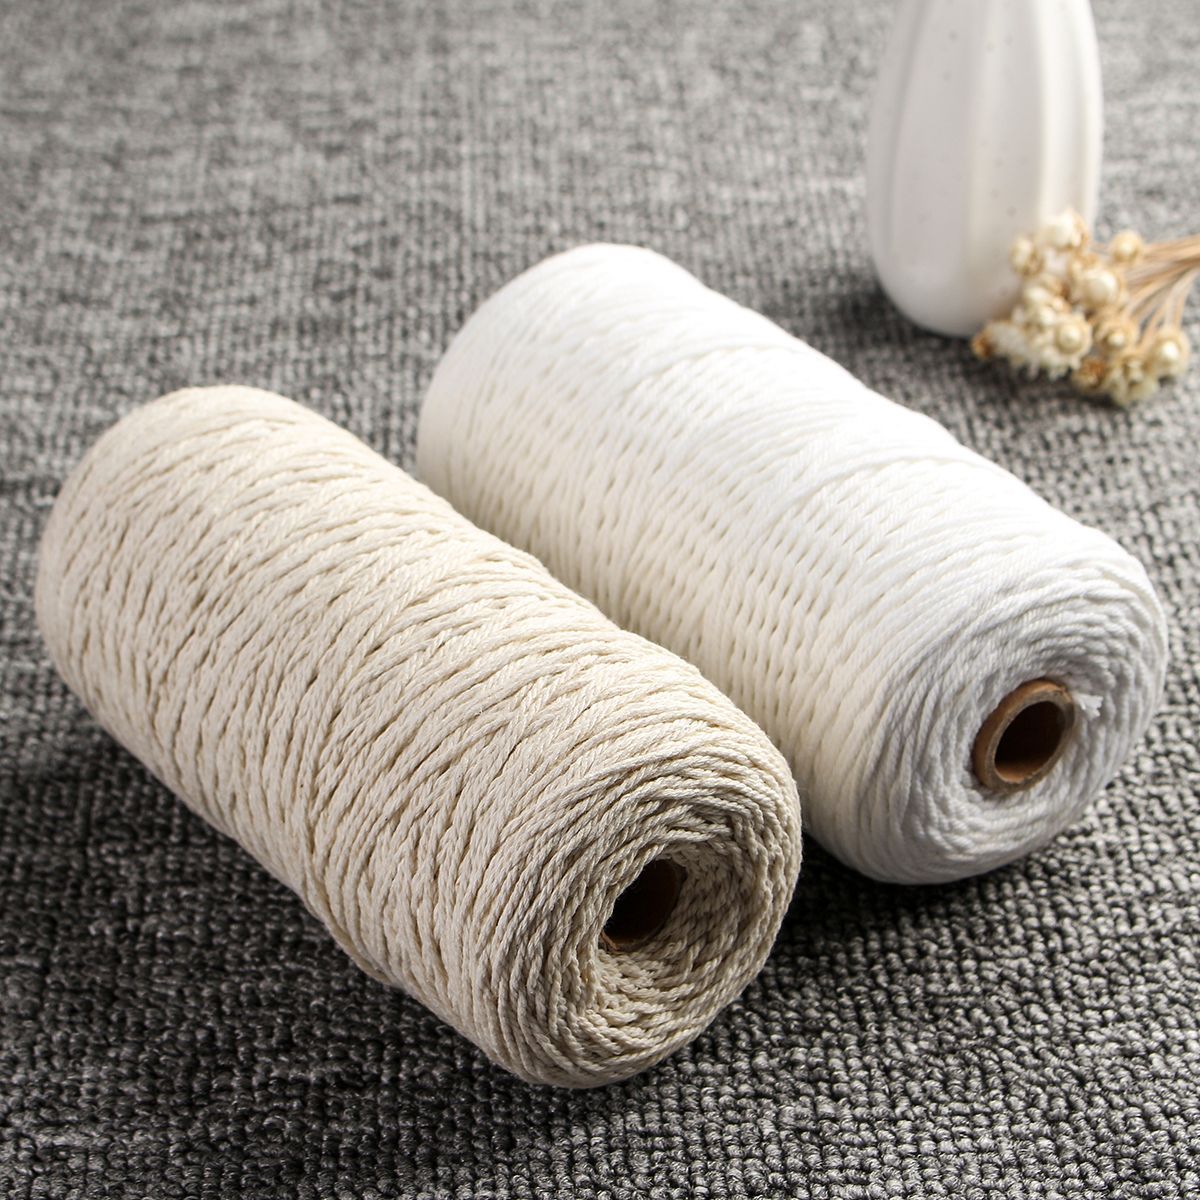 1mmx400m-Beige-White-Woven-Cotton-Rope-Braided-Wire-1362314